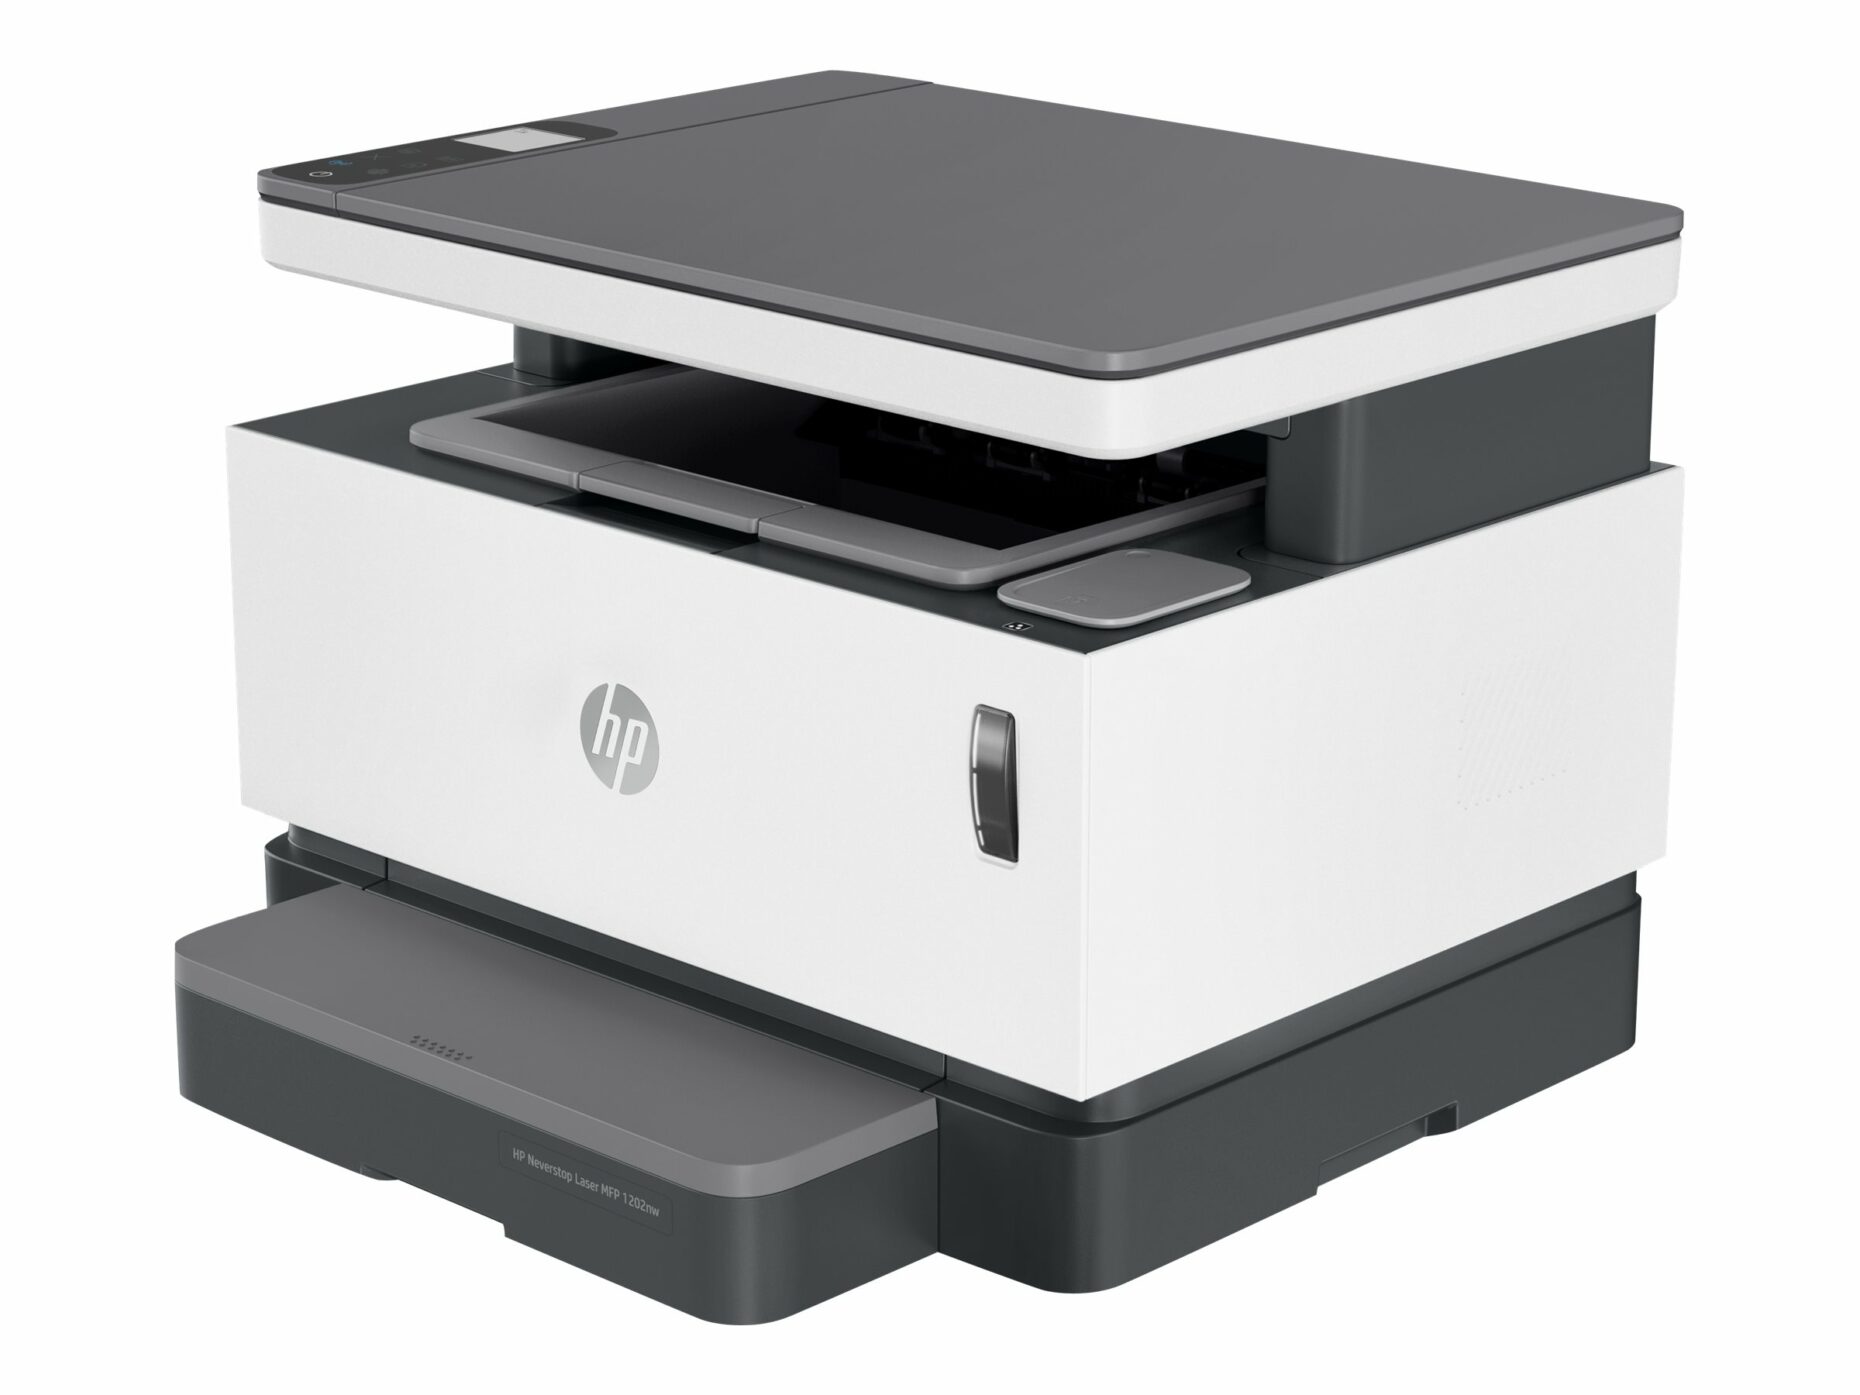 HP Neverstop 1202nw Cartridge-Free Laser Tank - Multifunction Printer